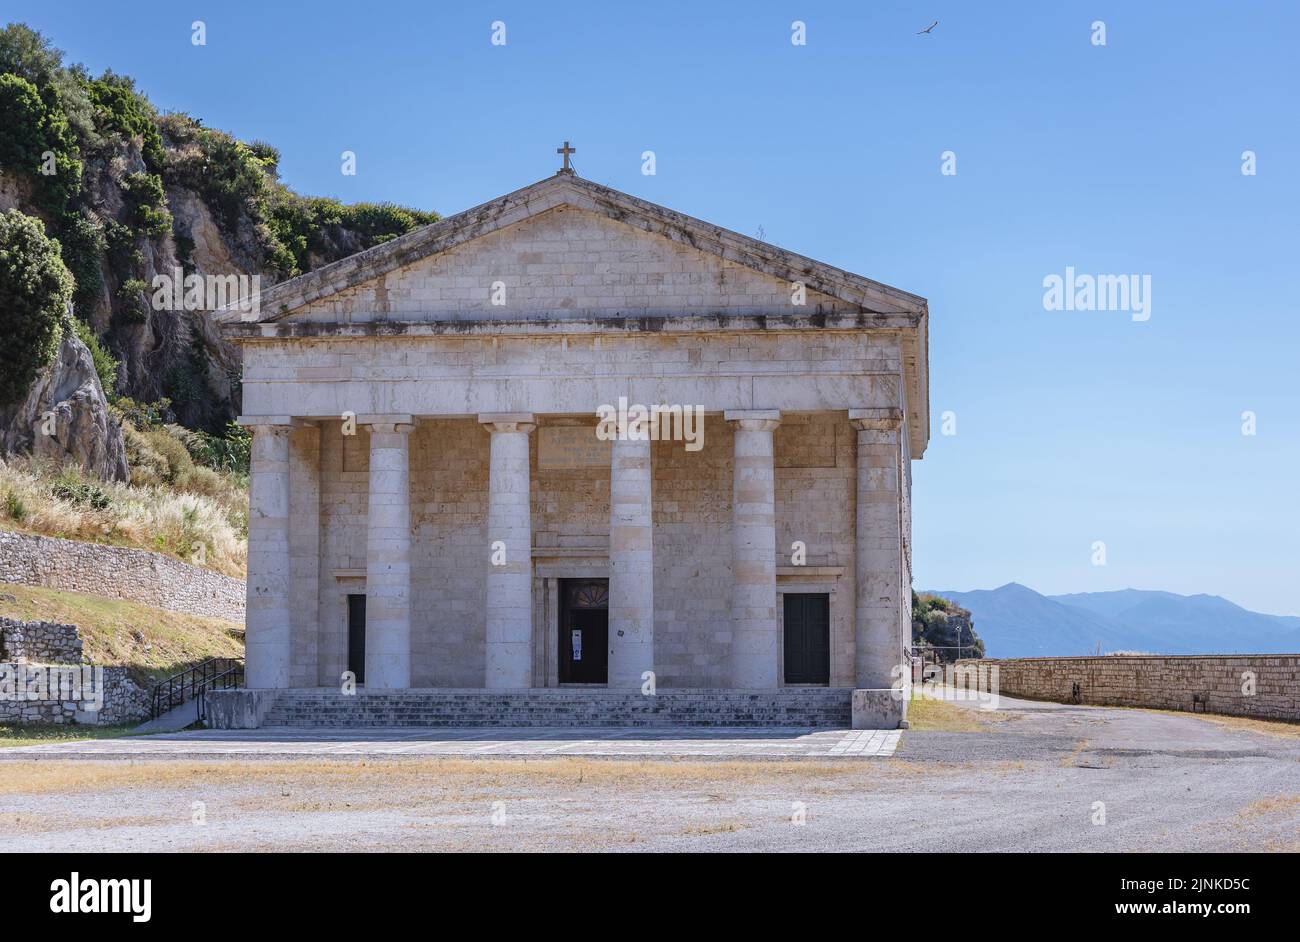 Iglesia de San Jorge en la antigua fortaleza veneciana en la ciudad de Corfú en una isla griega de Corfú Foto de stock